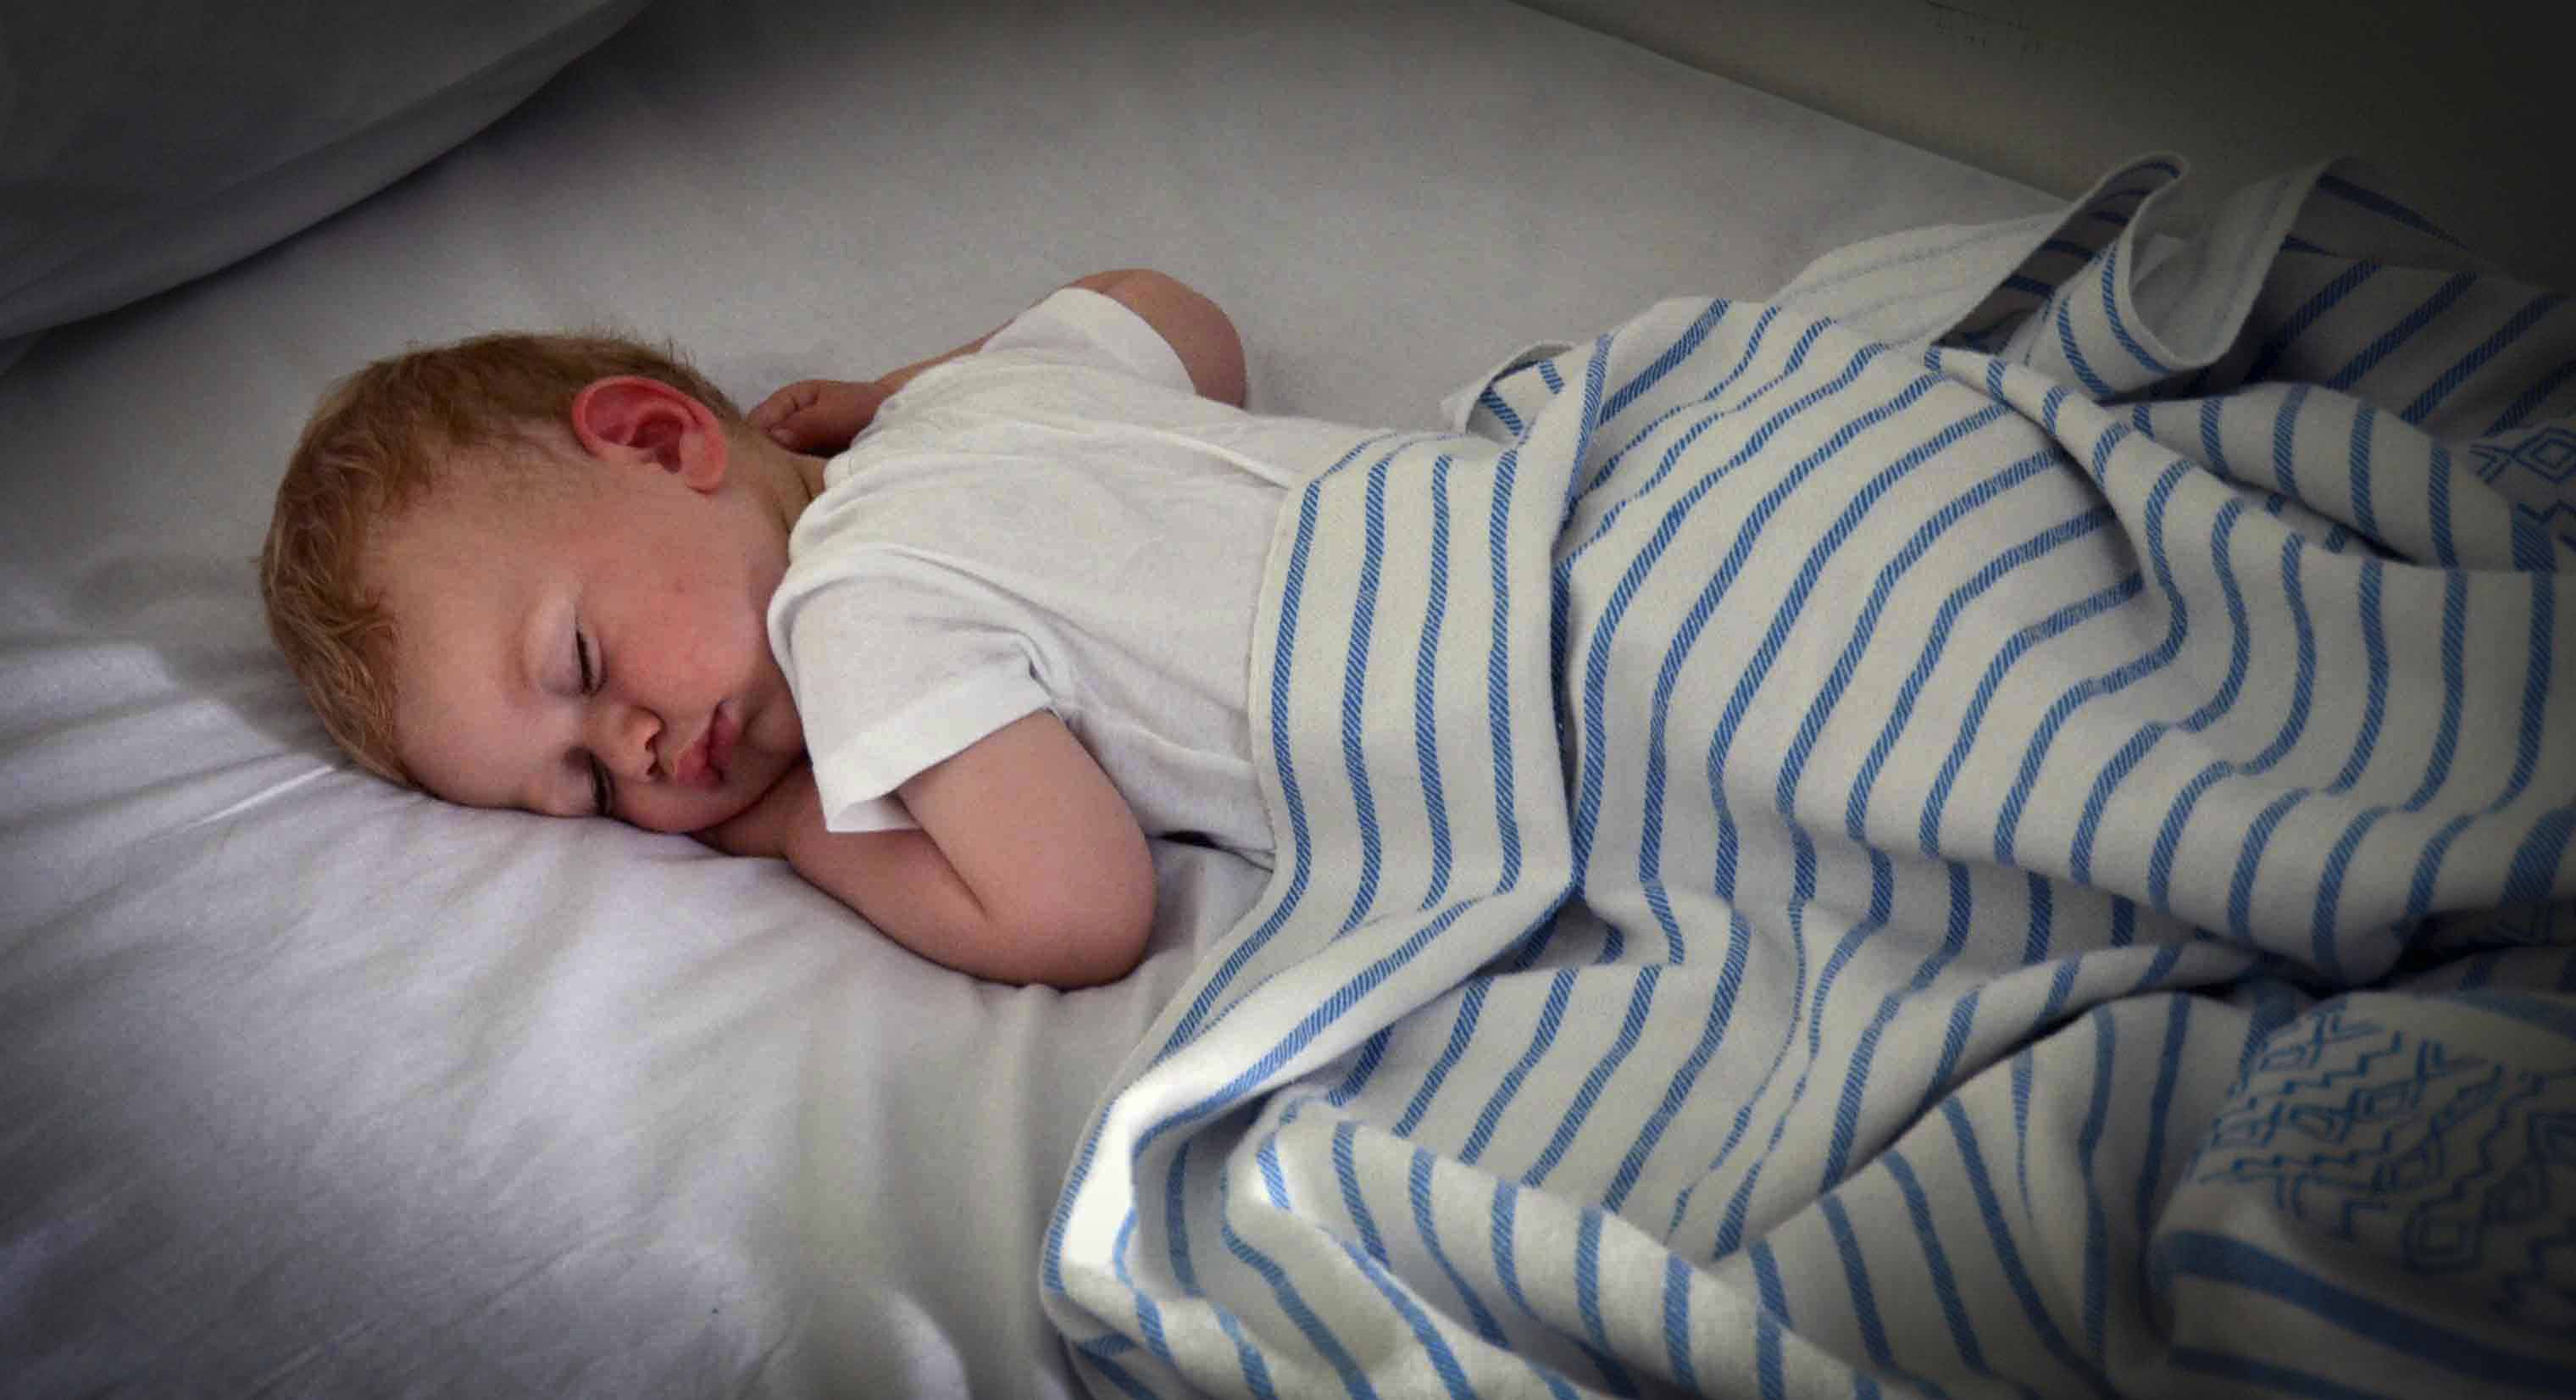 आपके बच्चे को किस समय बिस्तर पर जाना चाहिए? प्रैक्टिकल गाइड अपनी उम्र के अनुसार।